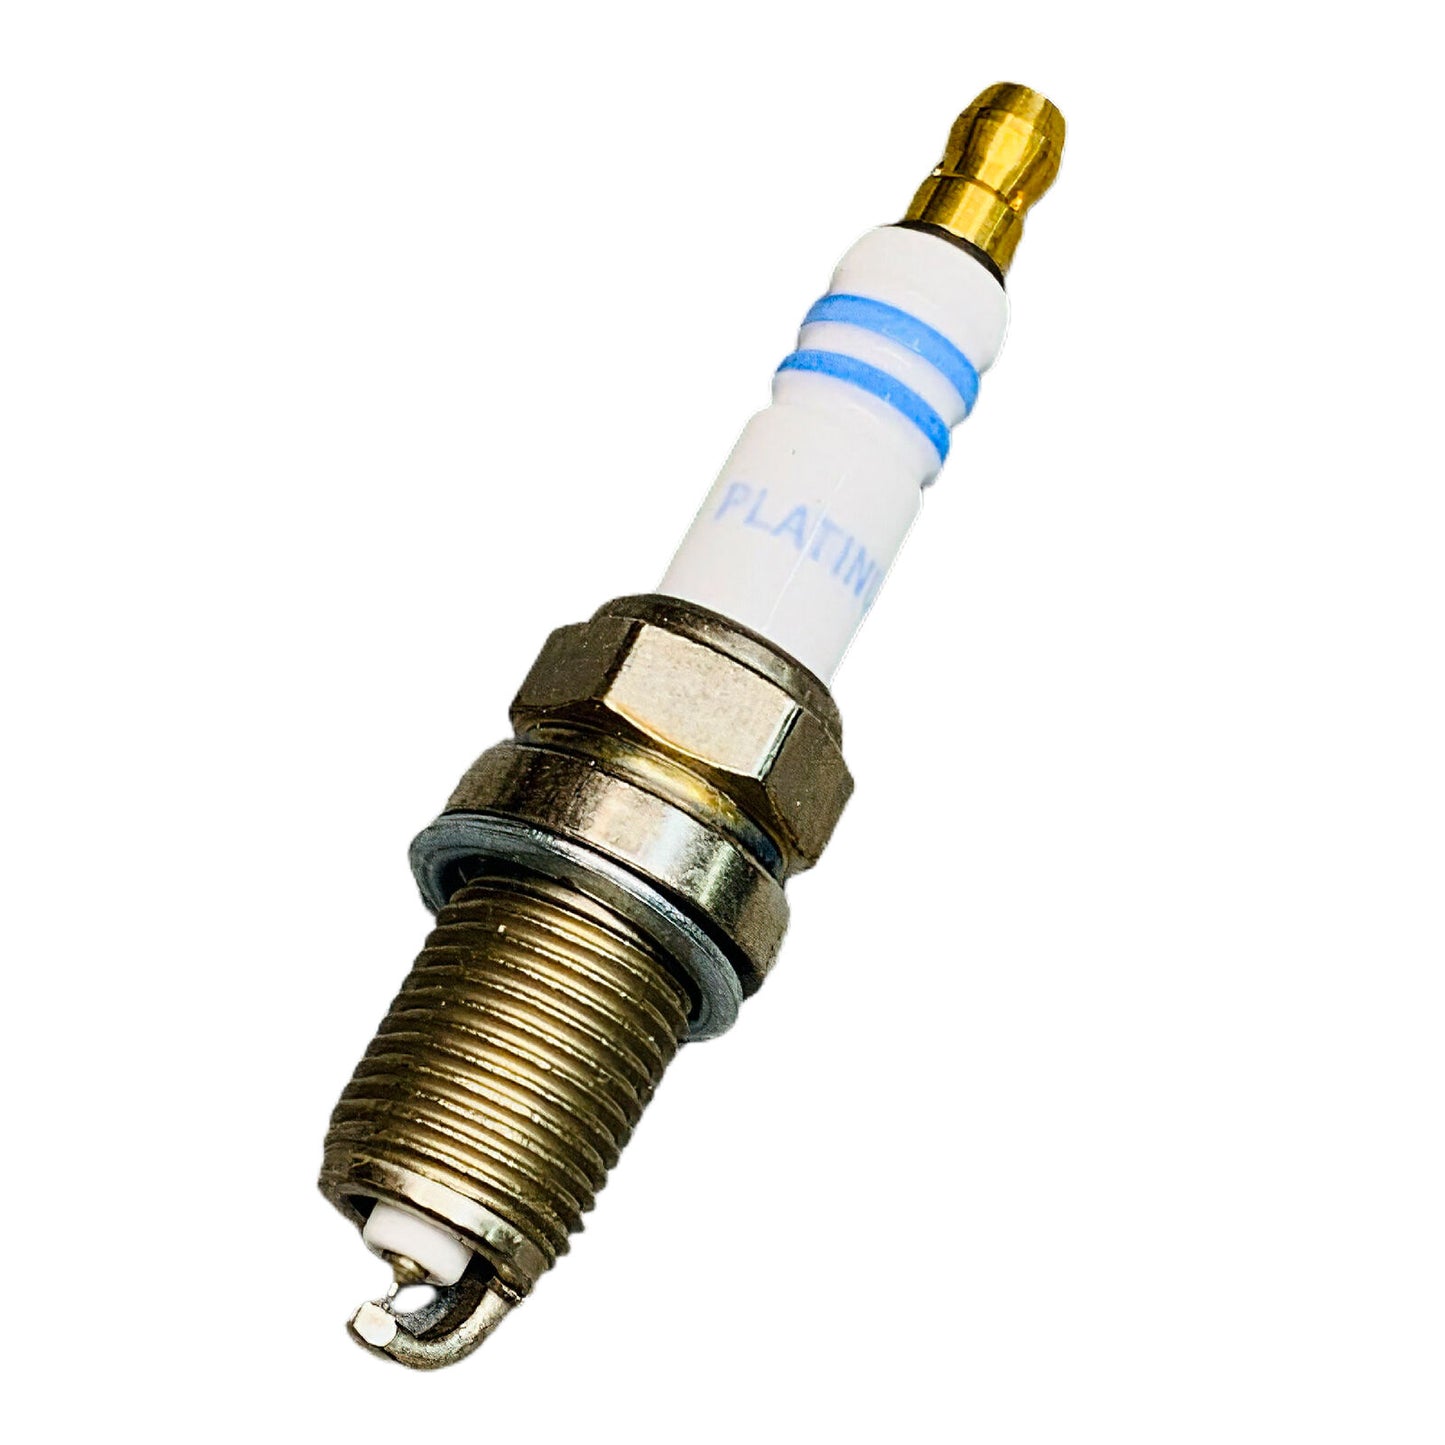 5PCS UF356 Ignition Coil & Bosch Platinum Spark Plug For Isuzu Rodeo Amigo 2.2L